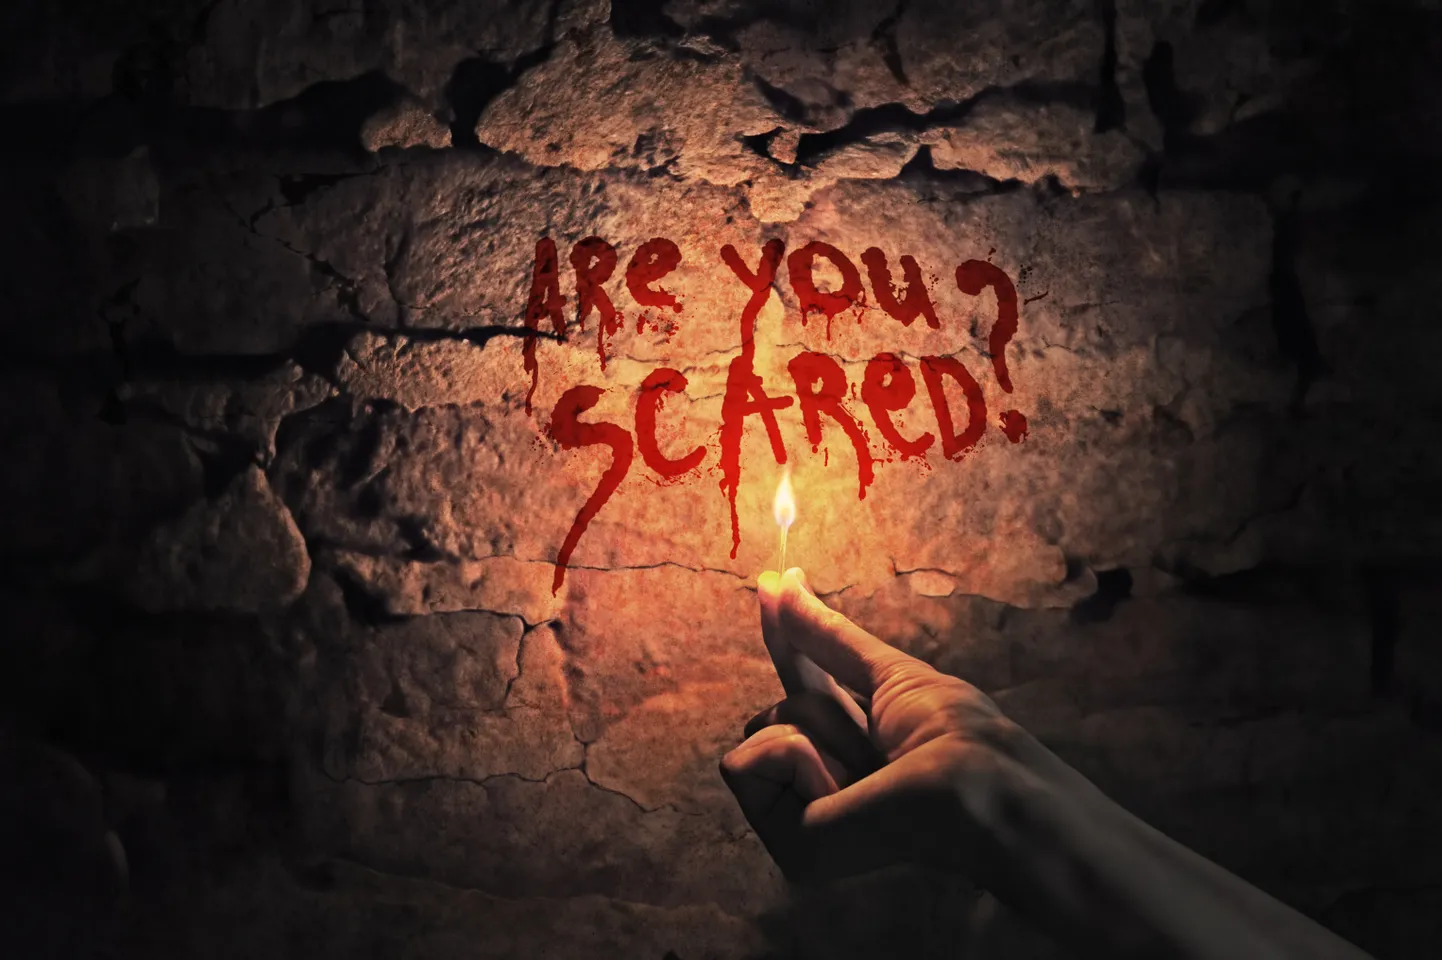 Kas sa kardad?